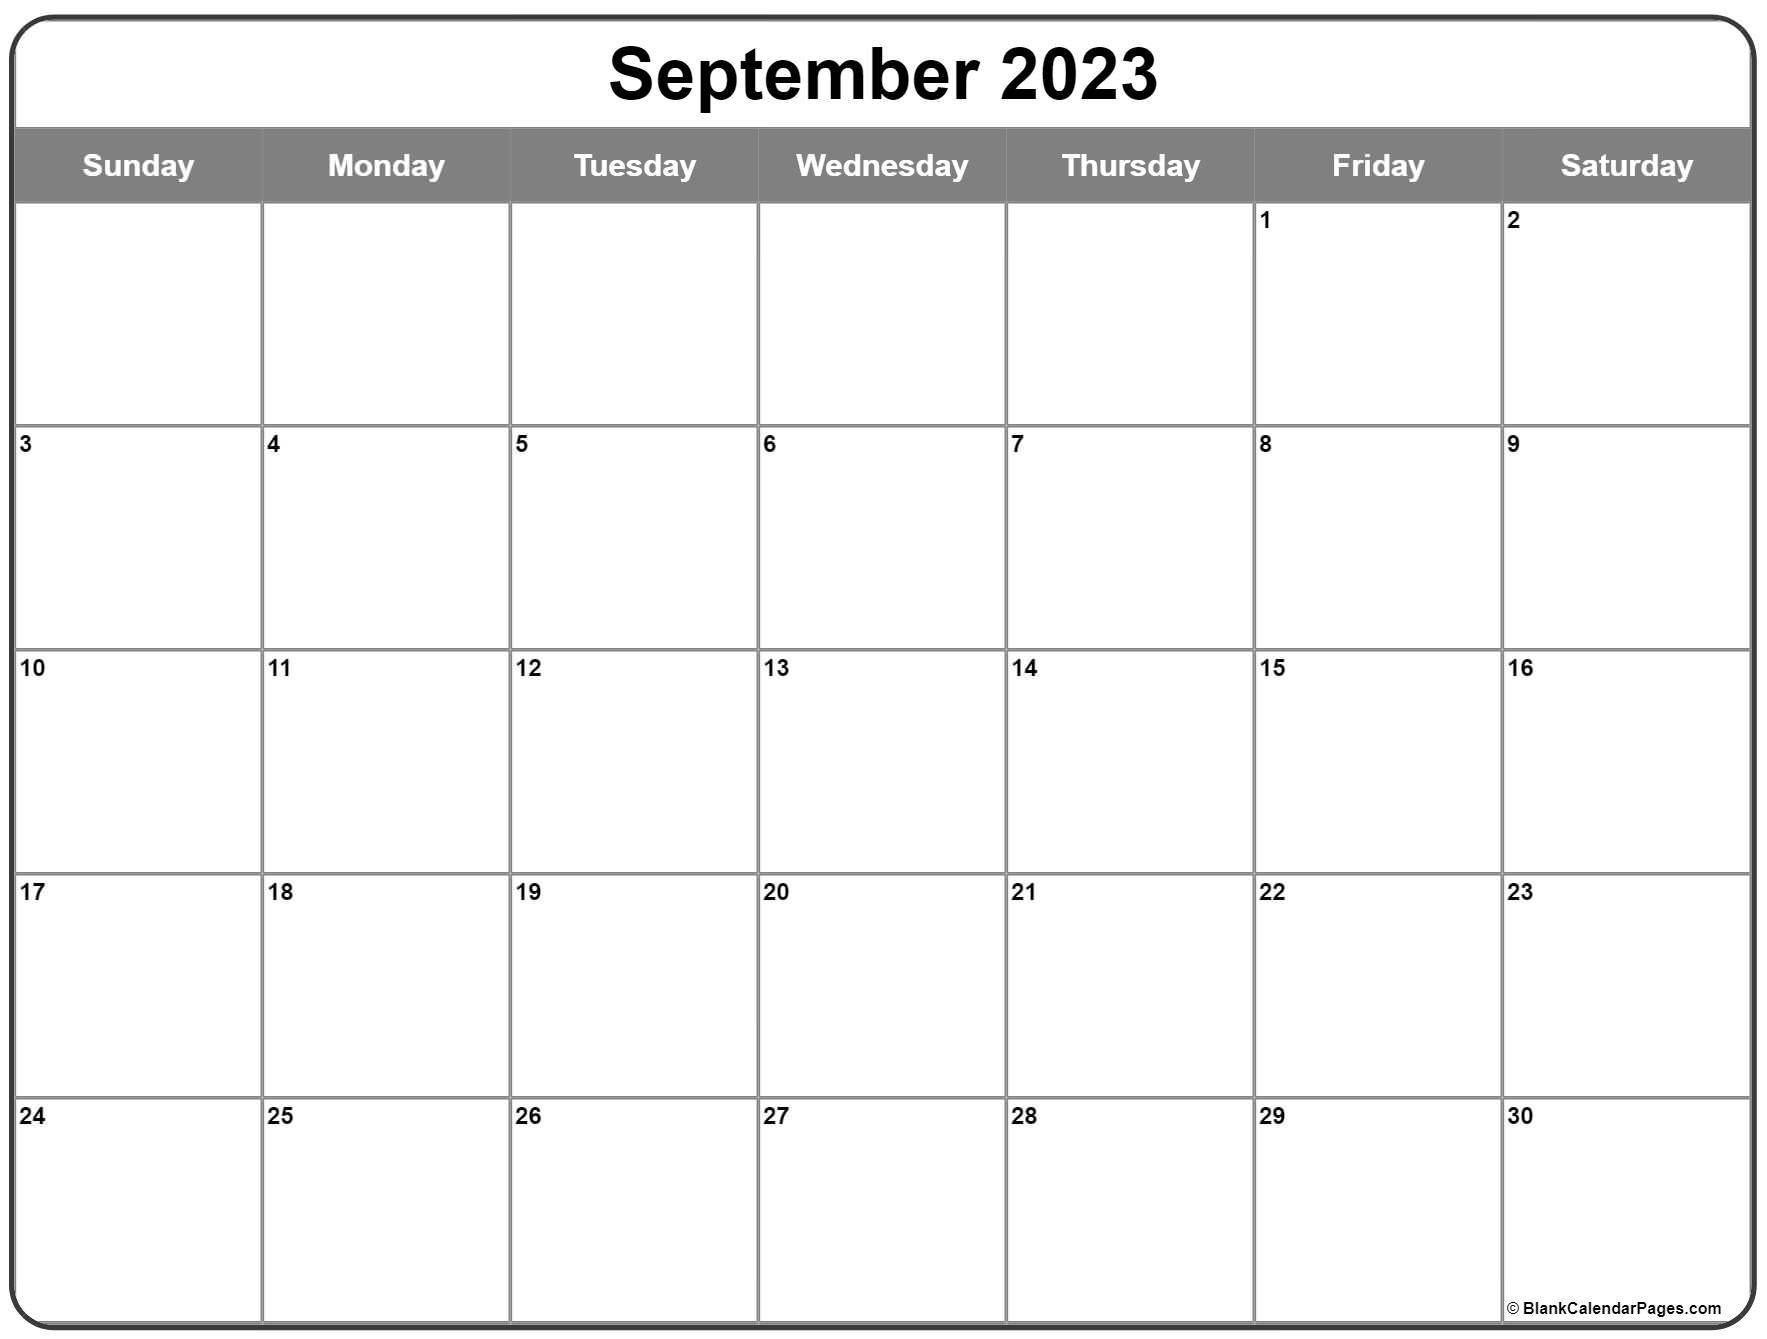 september-2023-printable-calendar-printable-world-holiday